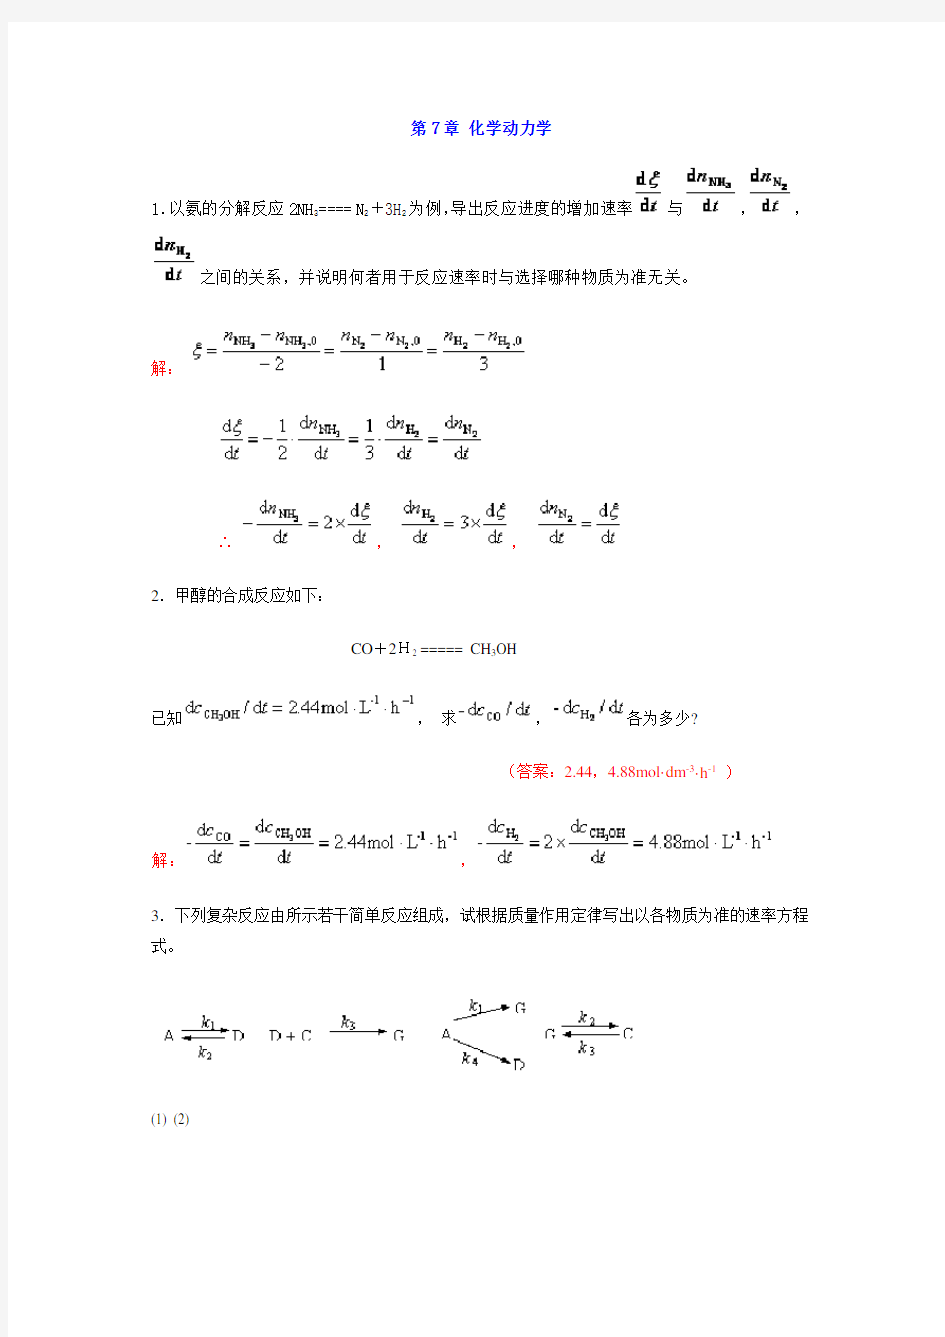 中南大学物化课后习题答案-7--章-化学动力学